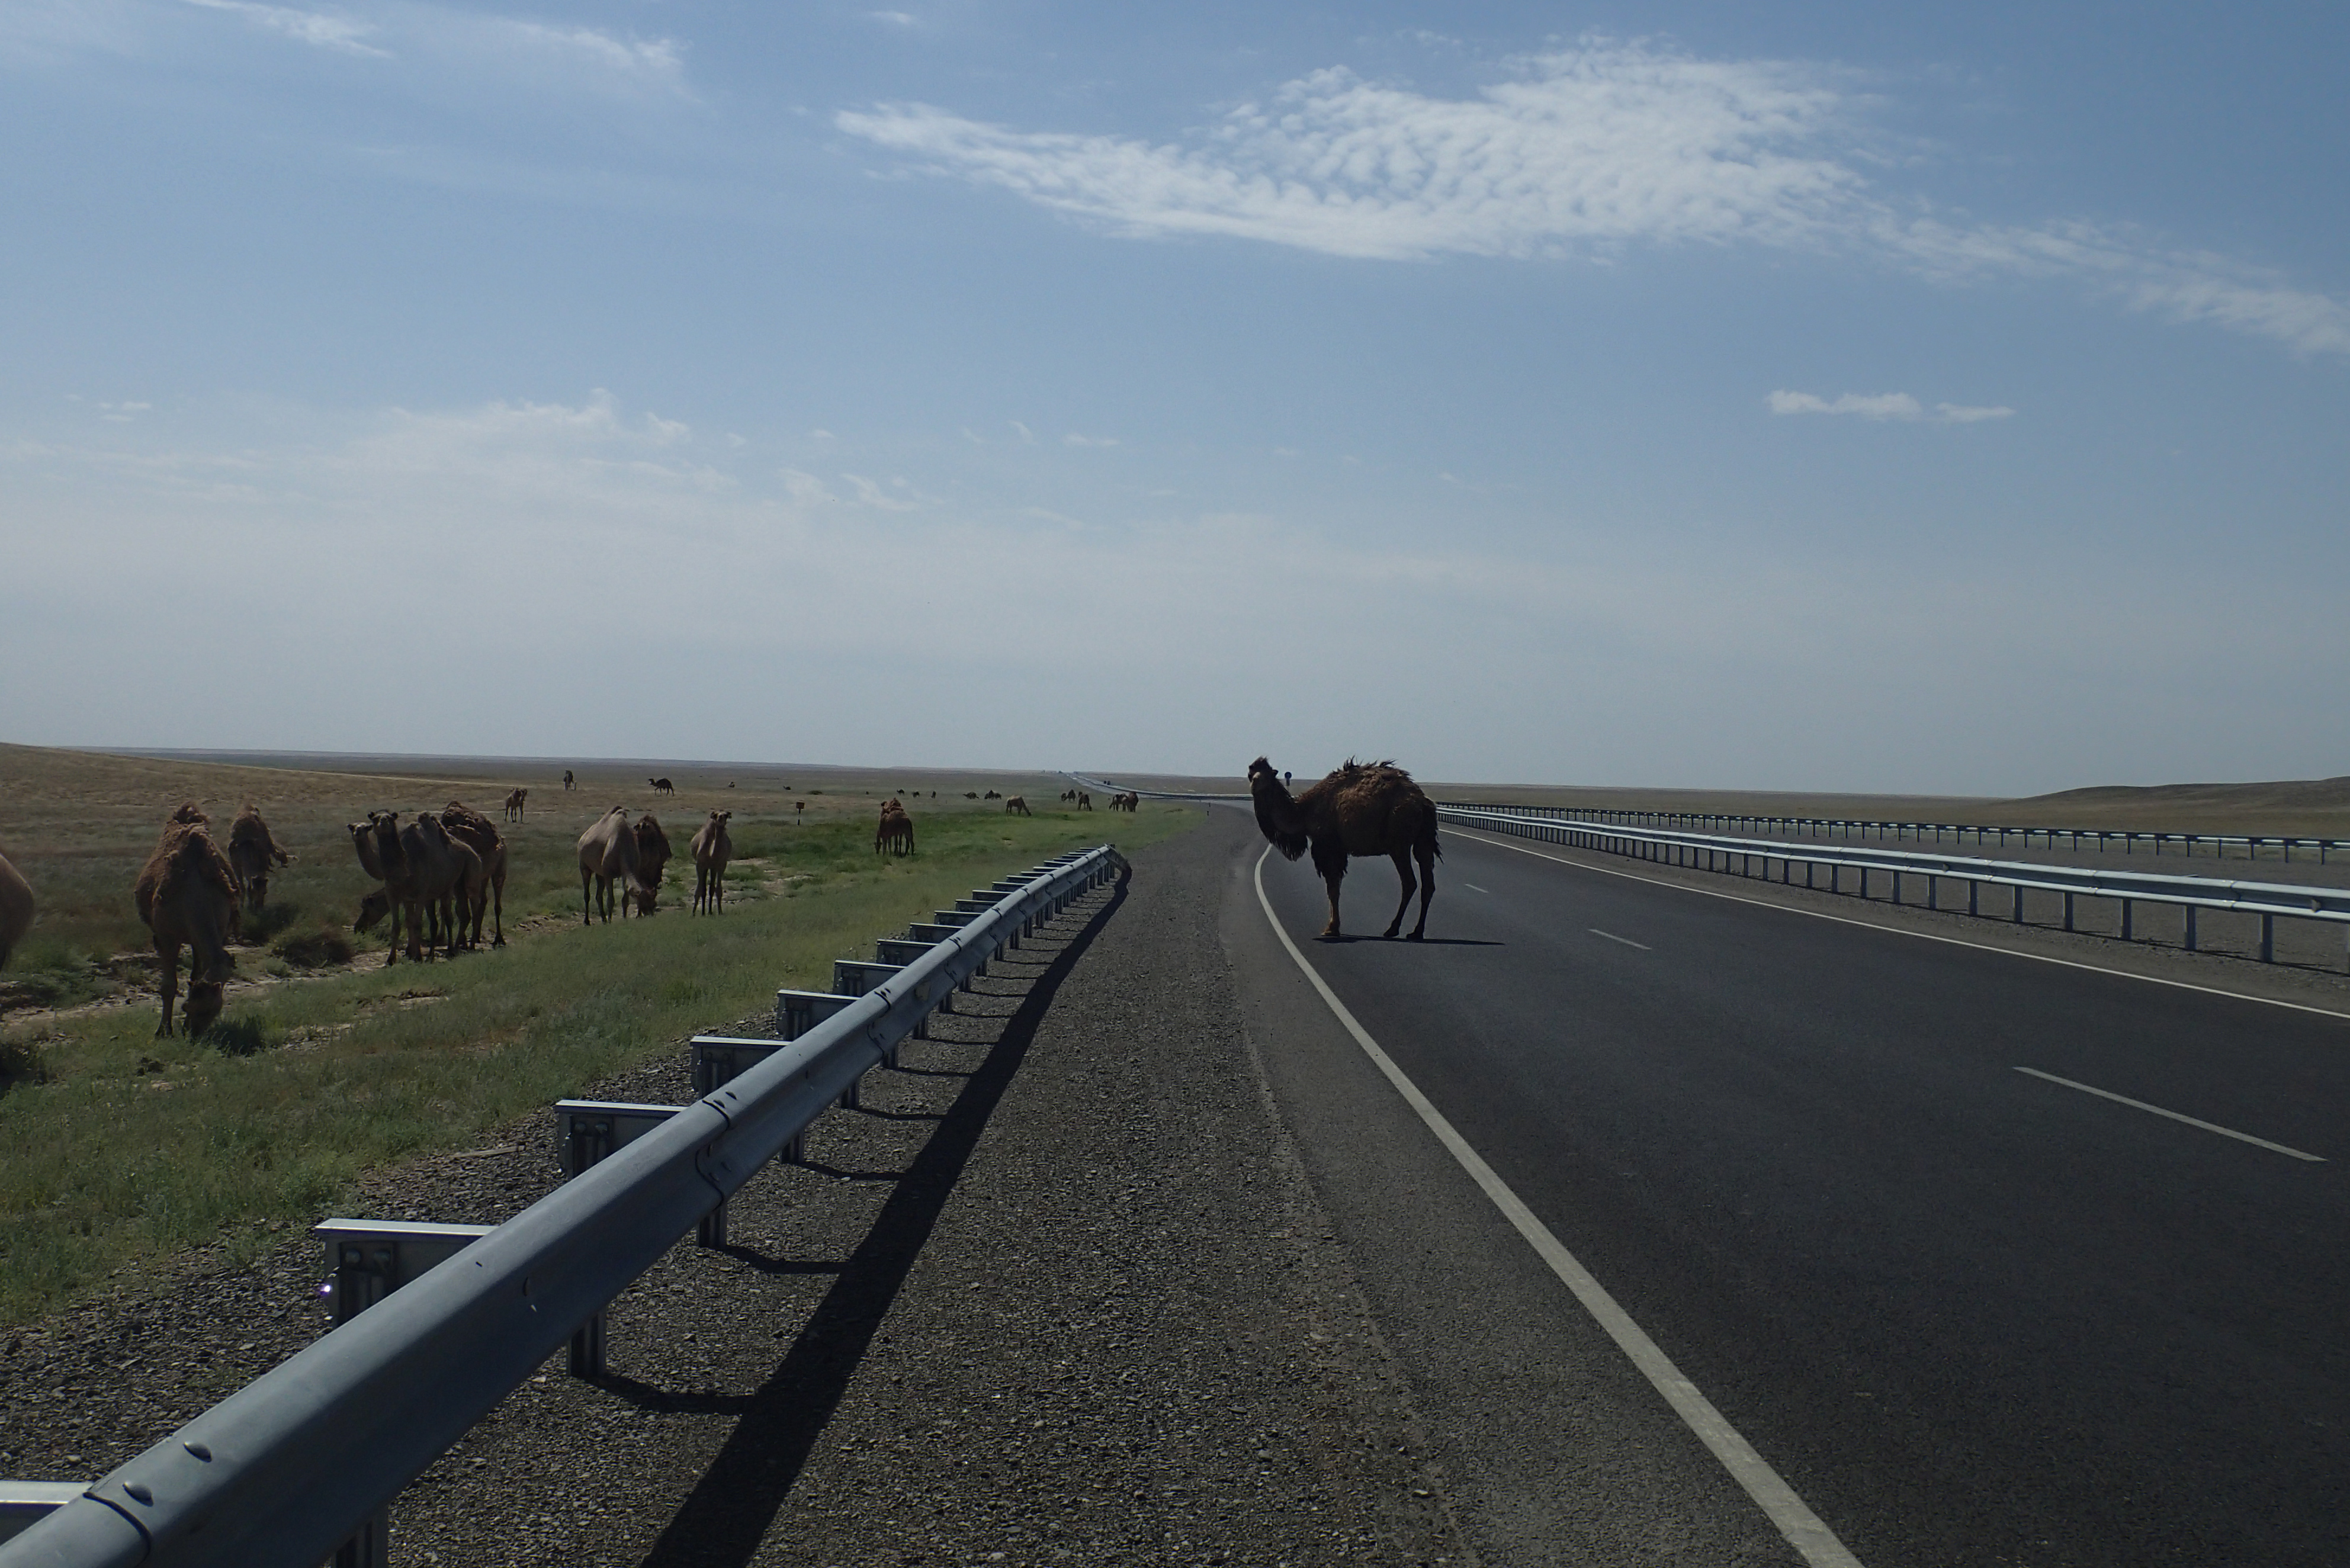 Er staat een kameel op de weg, jaja, een kameel in de weg, oh oh een kameel op de weg, hier in de  steeeeppeeee!